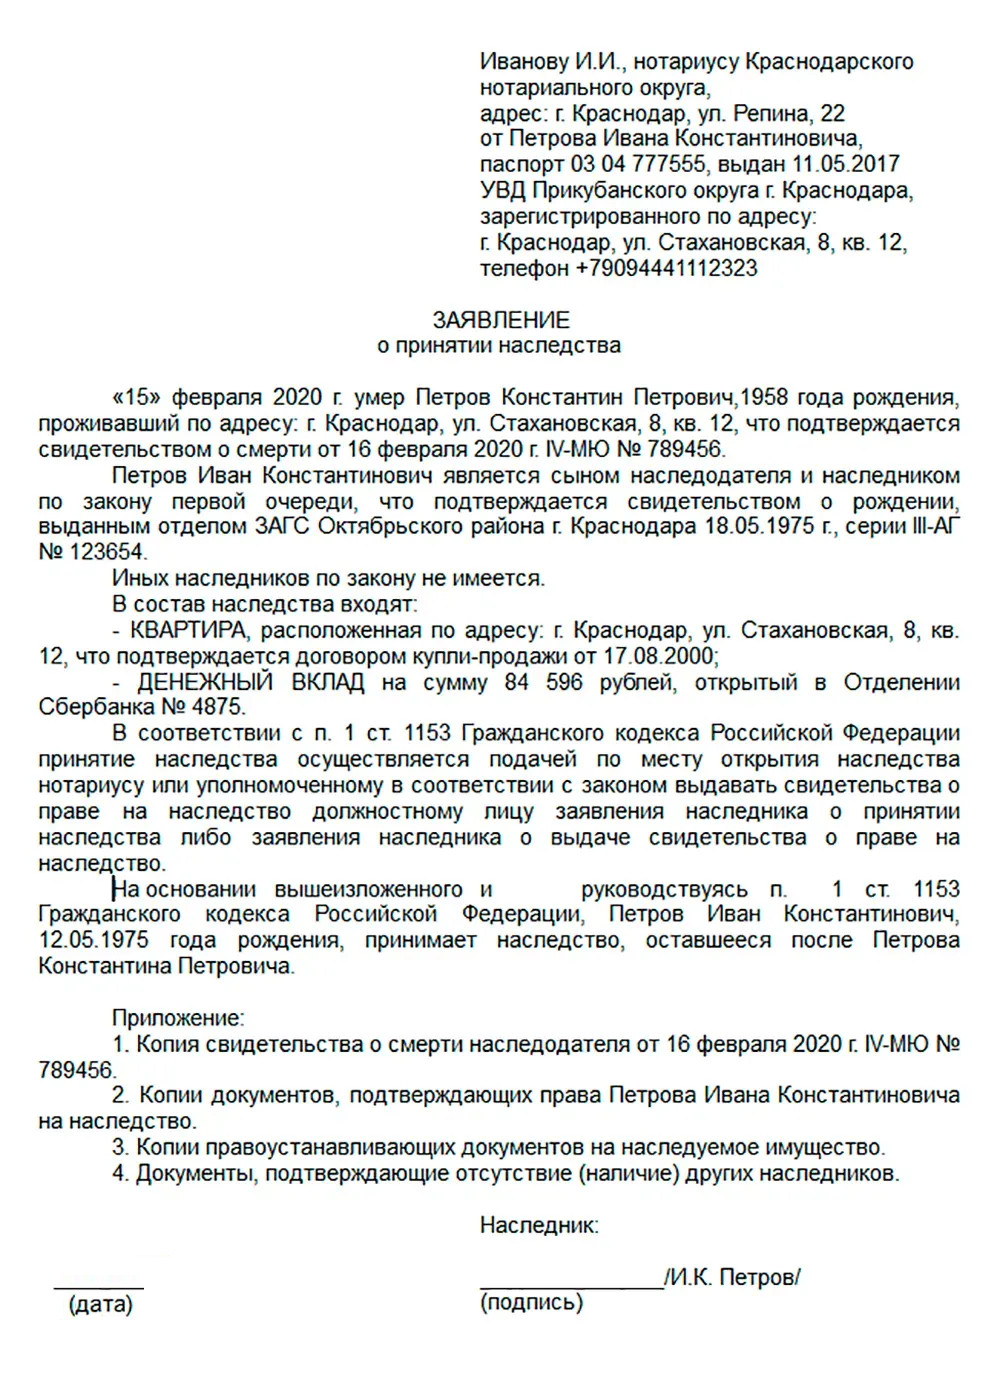 Как оспорить завещание: основания, сроки и документы | gkhyarovoe.ru